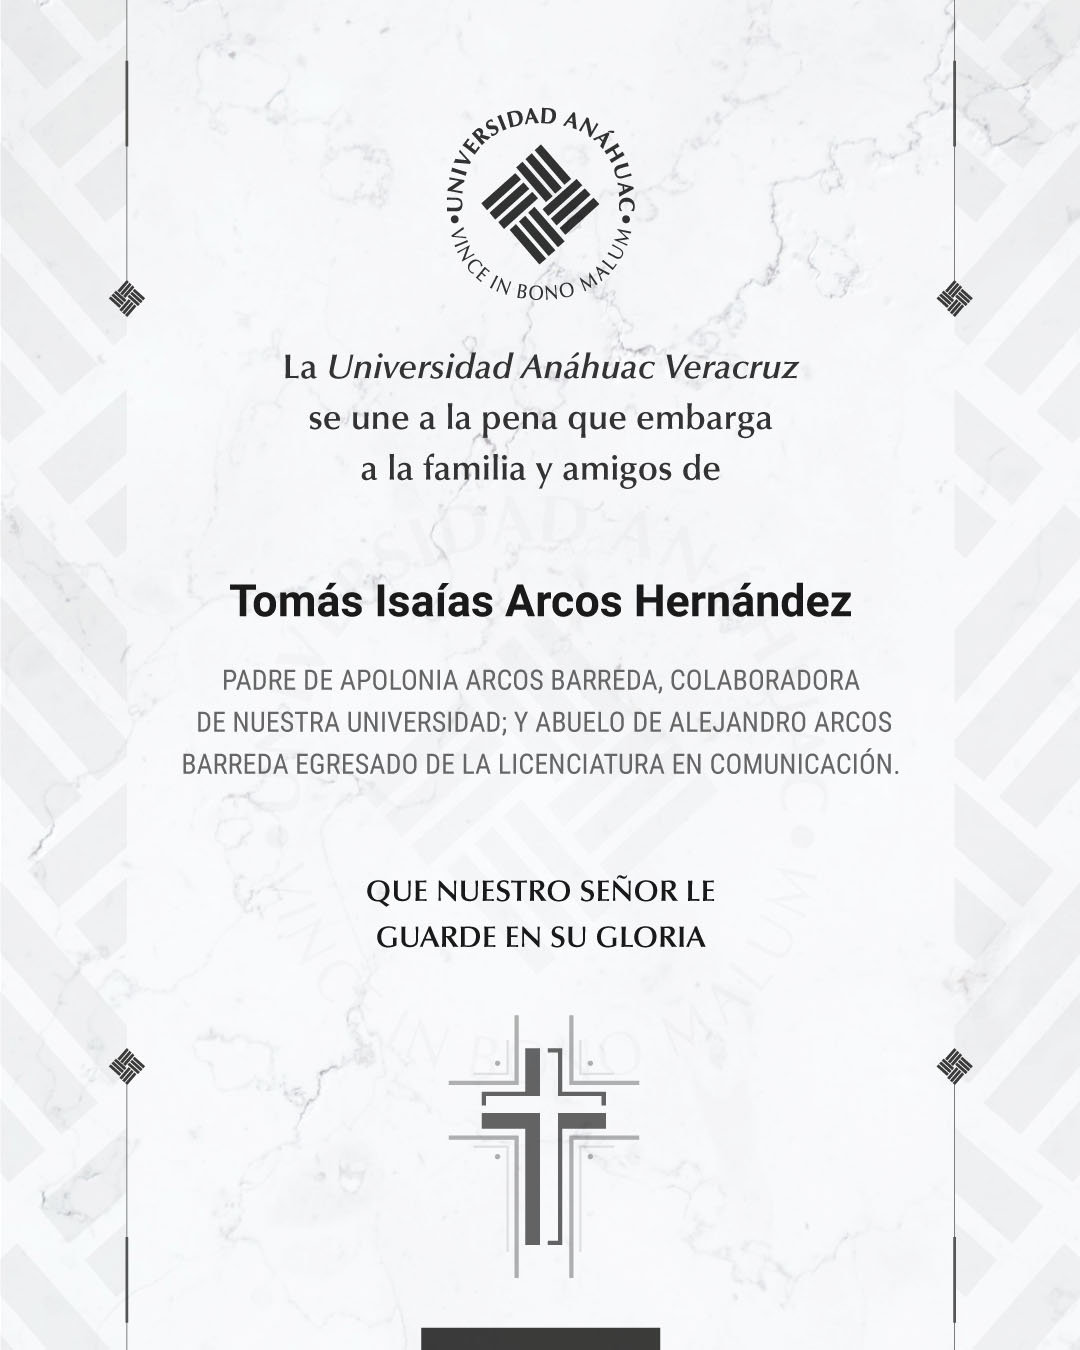 2 / 5 - Tomás Isaías Arcos Hernández